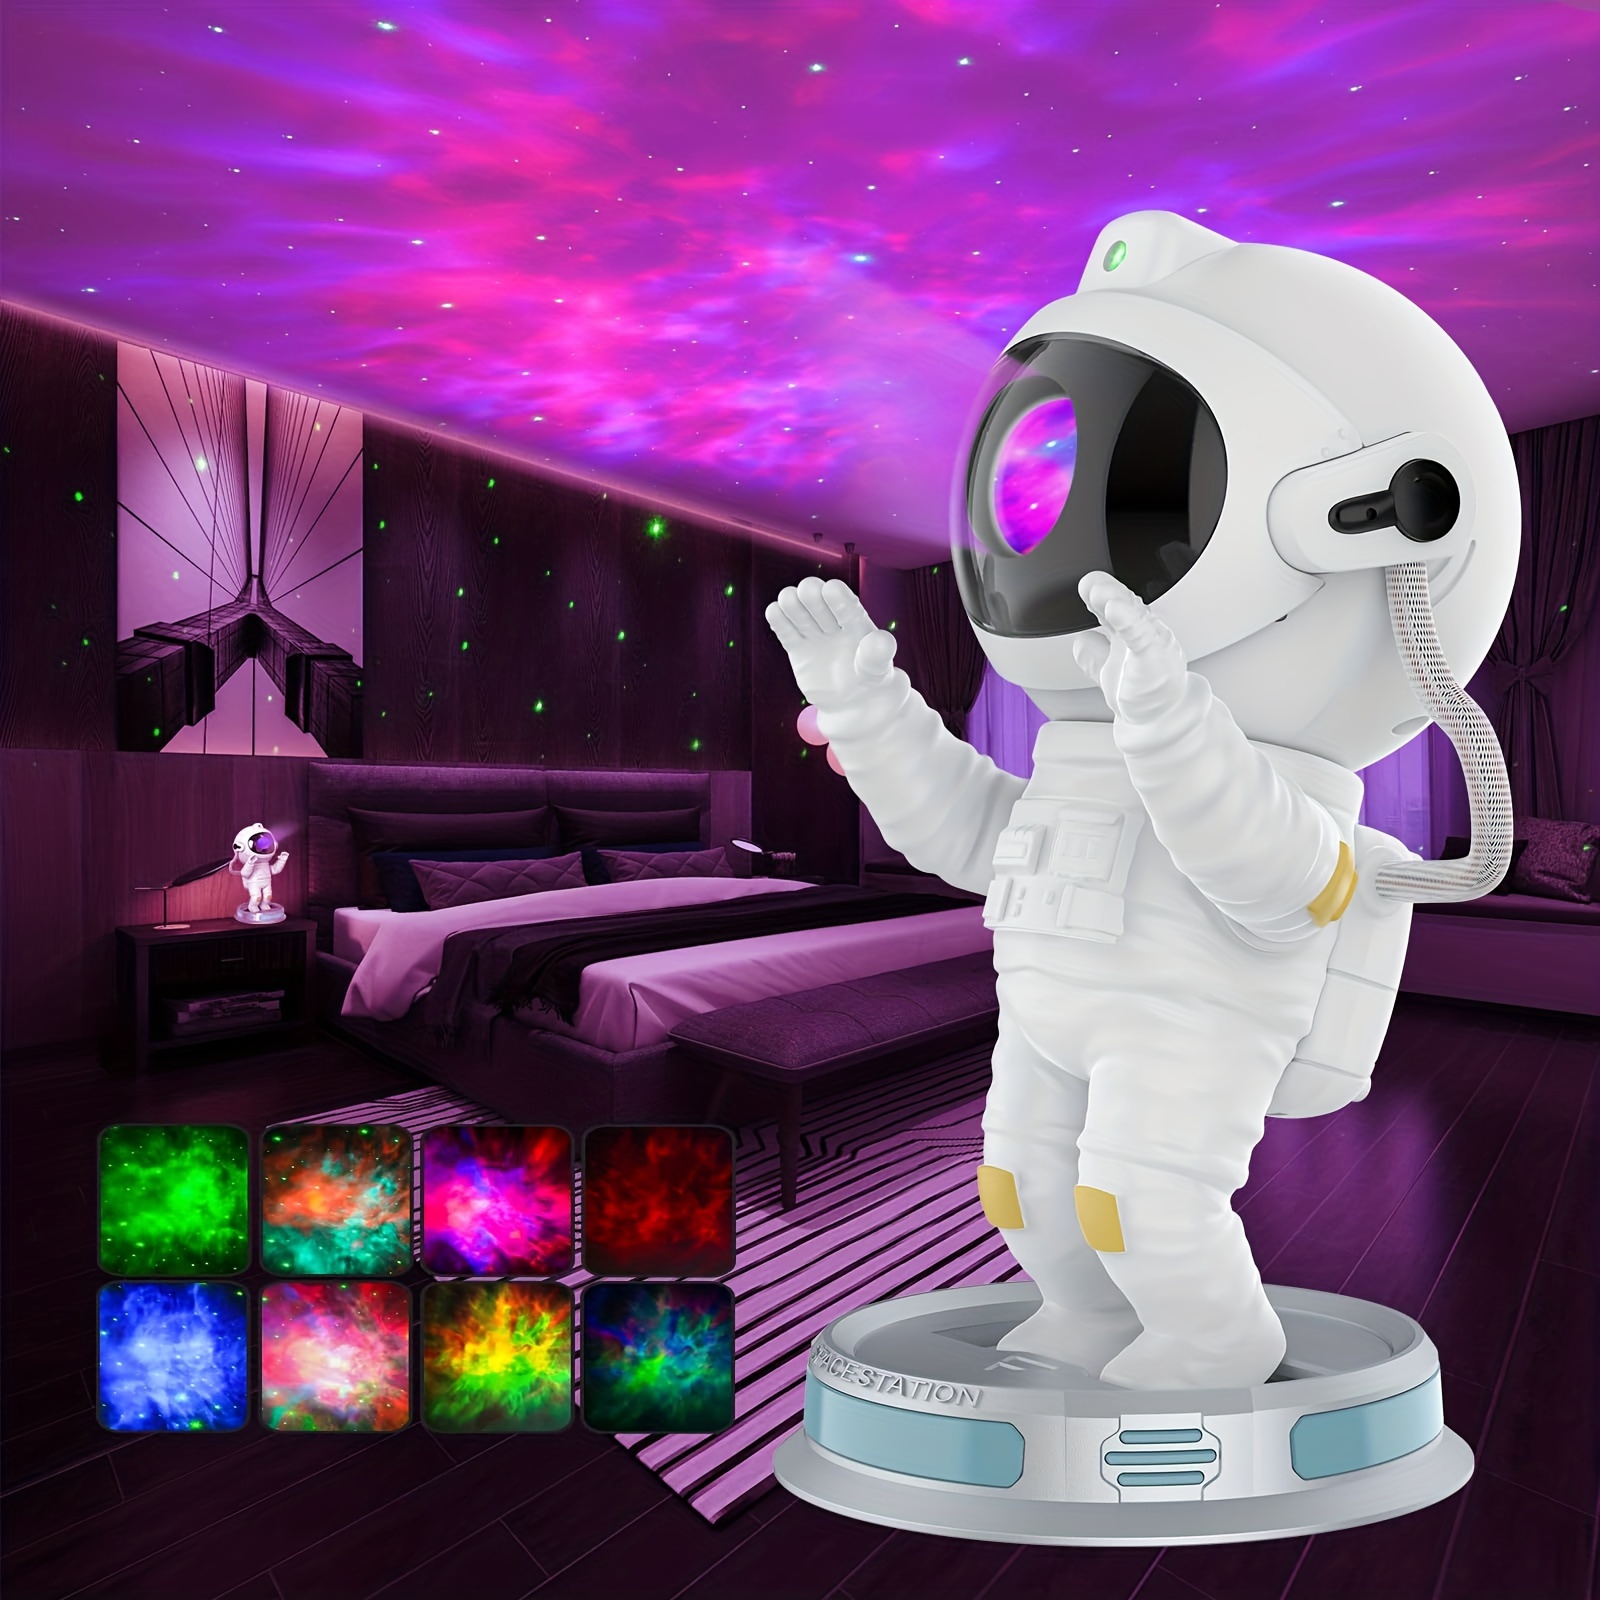 Proyector de estrellas de luz nocturna, proyector de astronauta con control  remoto/temporizador, decoración de habitación de niños, proyector estético